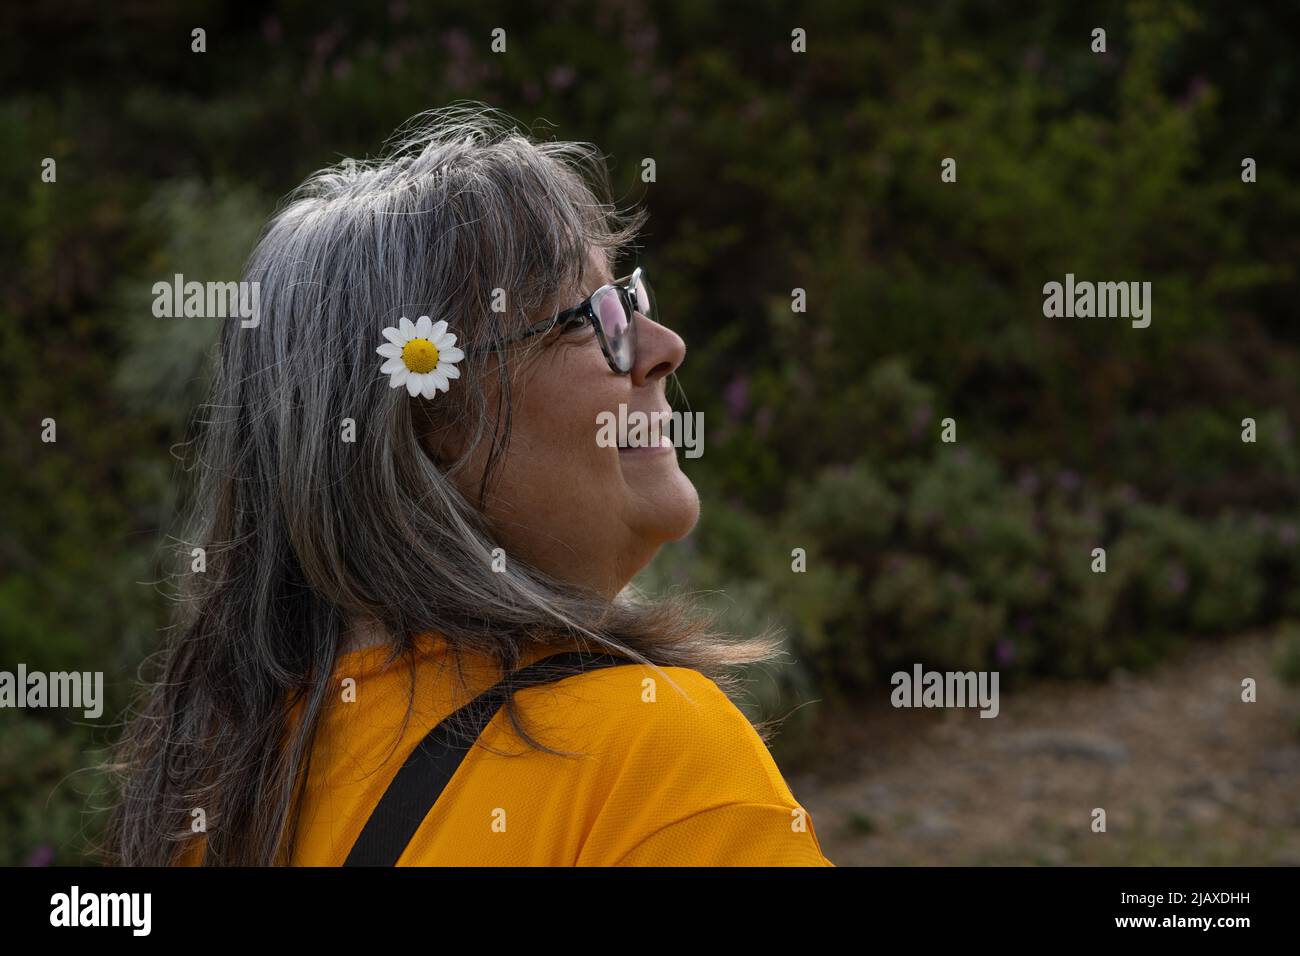 donna dai capelli bianchi che indossa occhiali con una margherita nei capelli Foto Stock